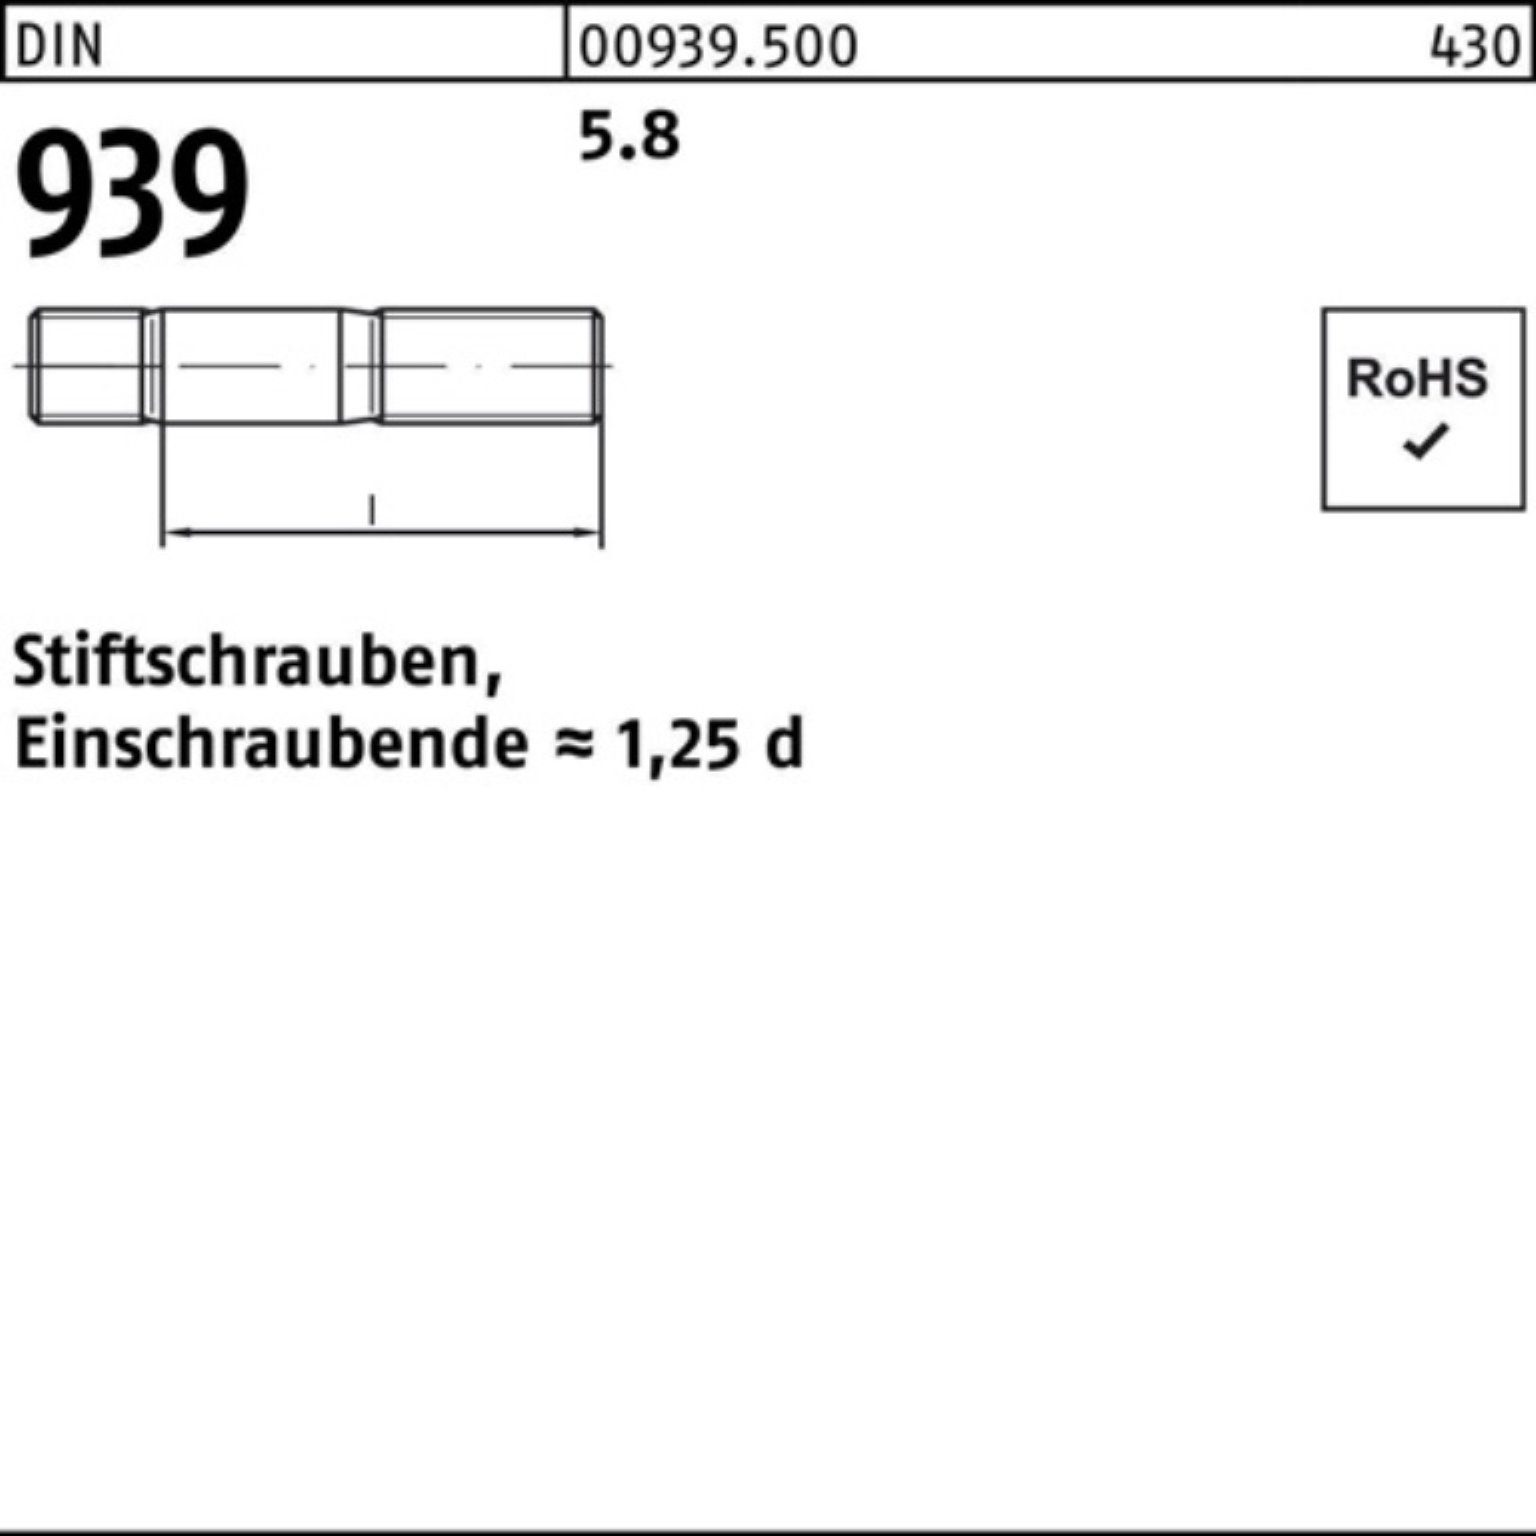 Reyher 90 Pack S 939 DIN M16x 5.8 Stiftschraube Stiftschraube Einschraubende=1,25d 100er 25